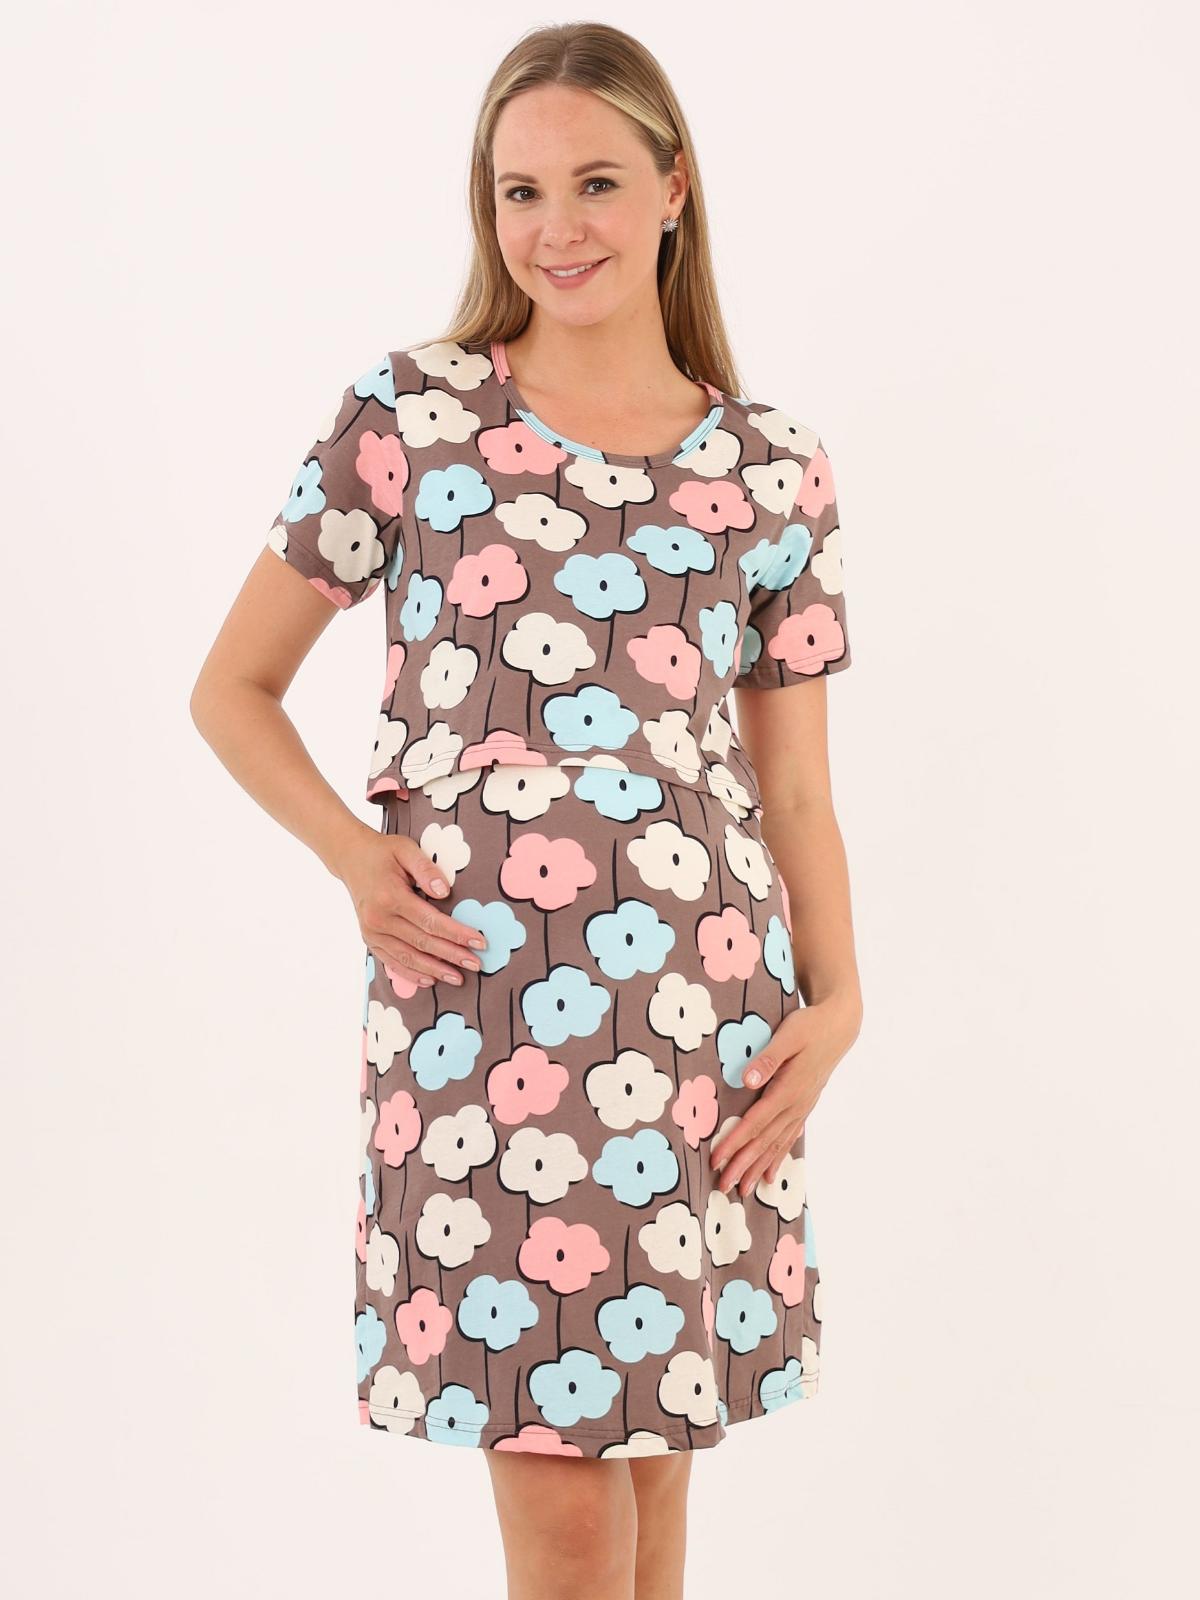 Сорочка для беременных и кормящих (домашнее платье) арт. 360505 цветы